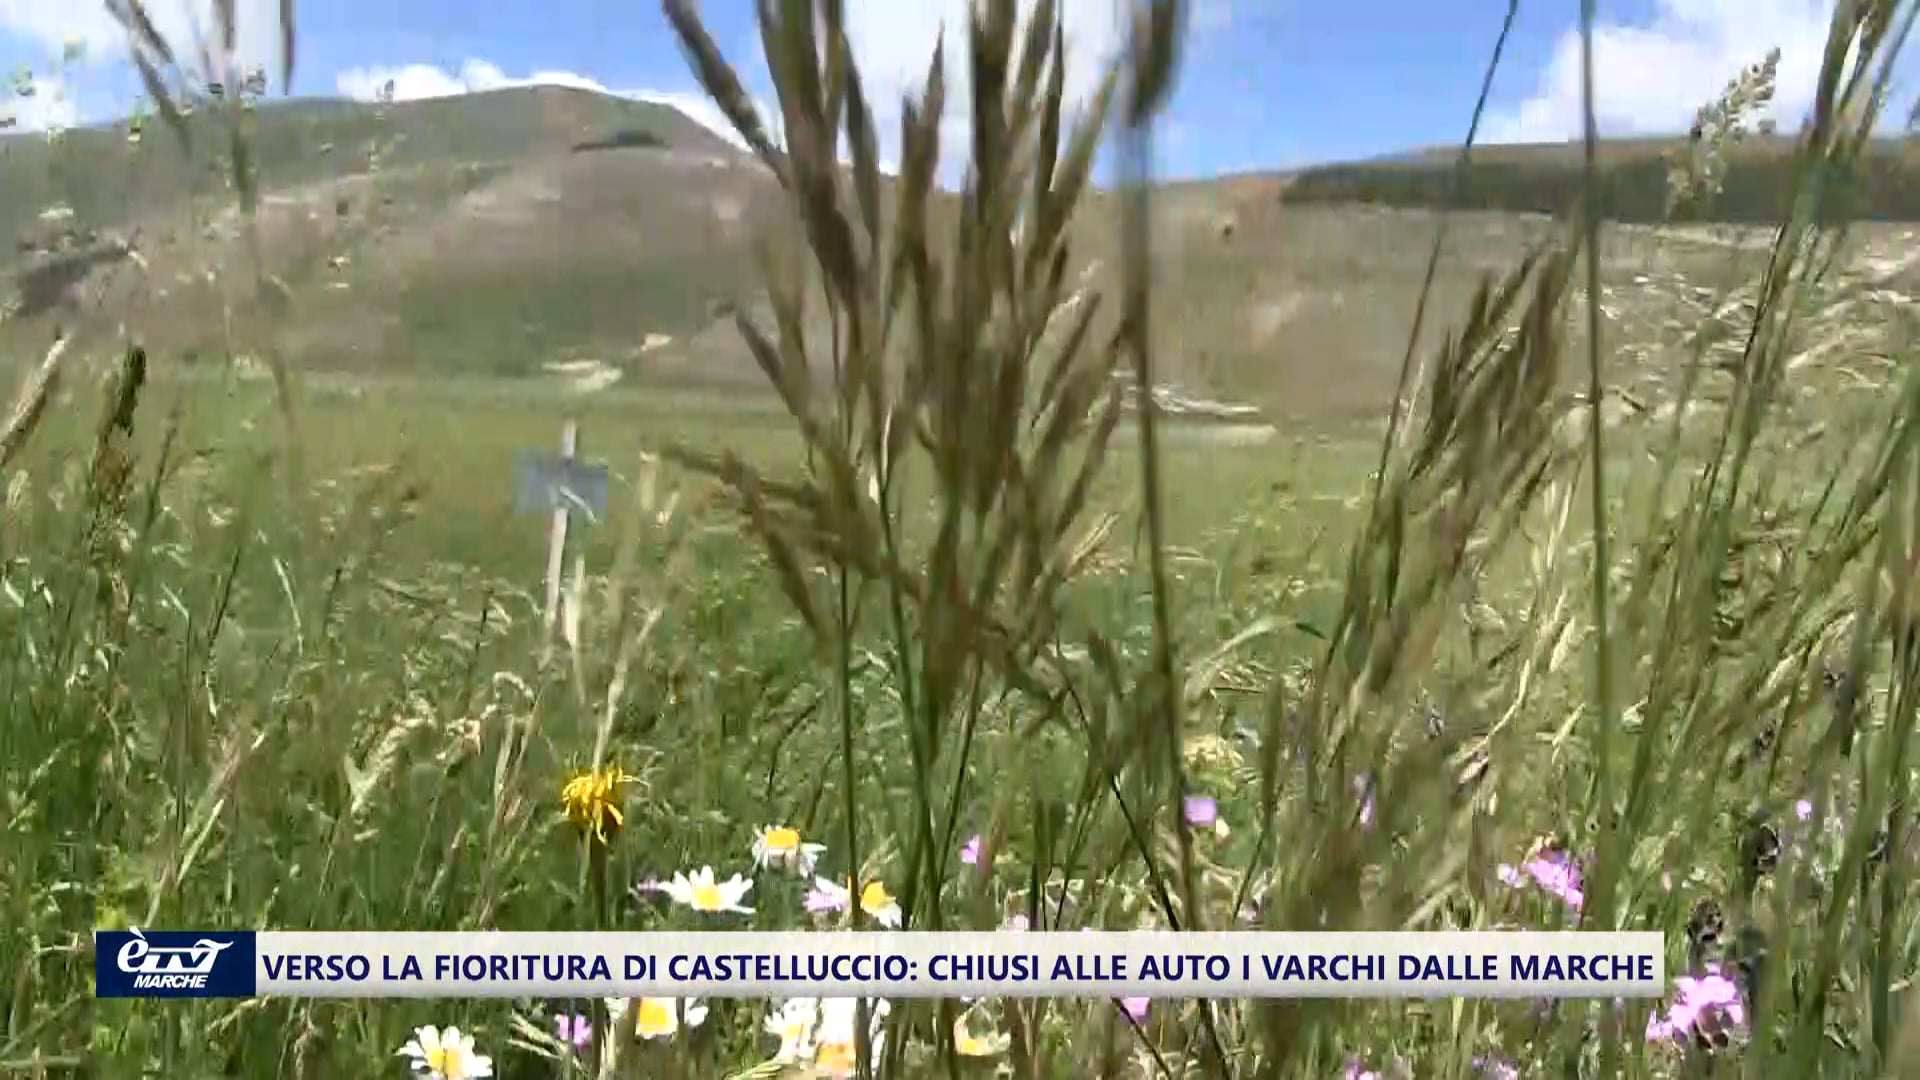 Verso il clou della fioritura di Castelluccio, ma varchi chiusi dalle Marche. Si cercano soluzioni - VIDEO